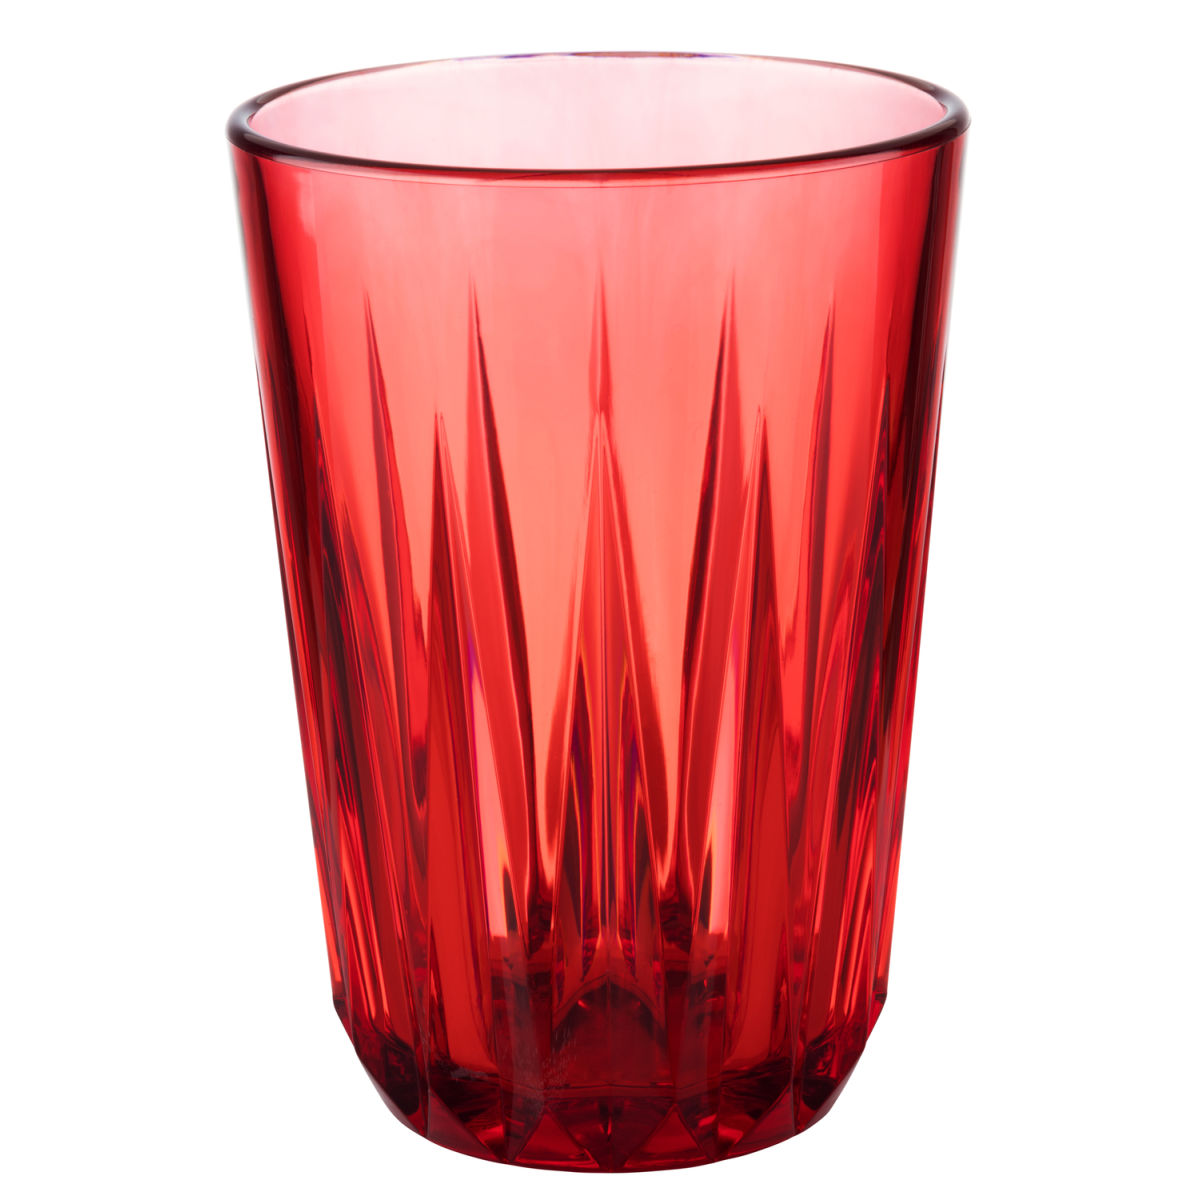 APS Waterglas Crystal; 150ml, 7x9.5 cm (ØxH); rood